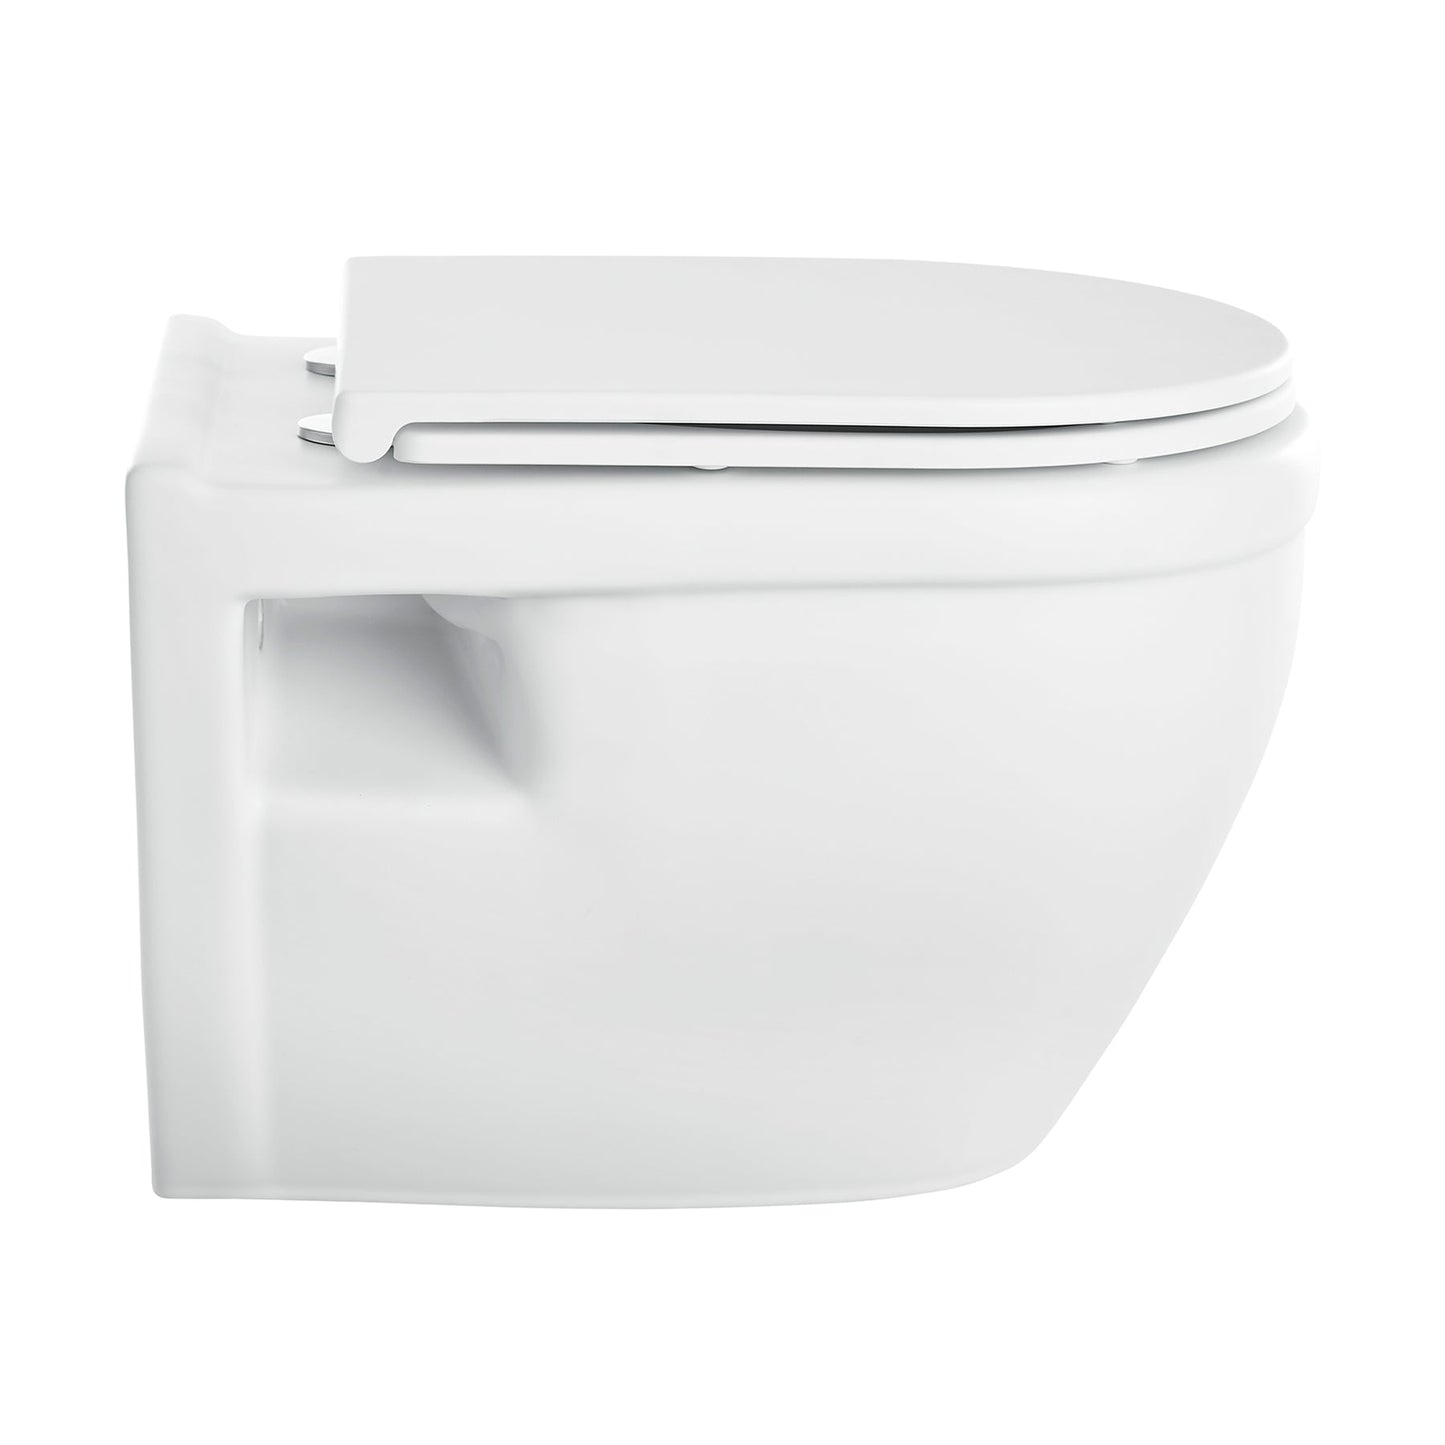 Swiss Madison Ivy 15" x 13" Matte White Elongated Wall-Hung Toilet Bowl